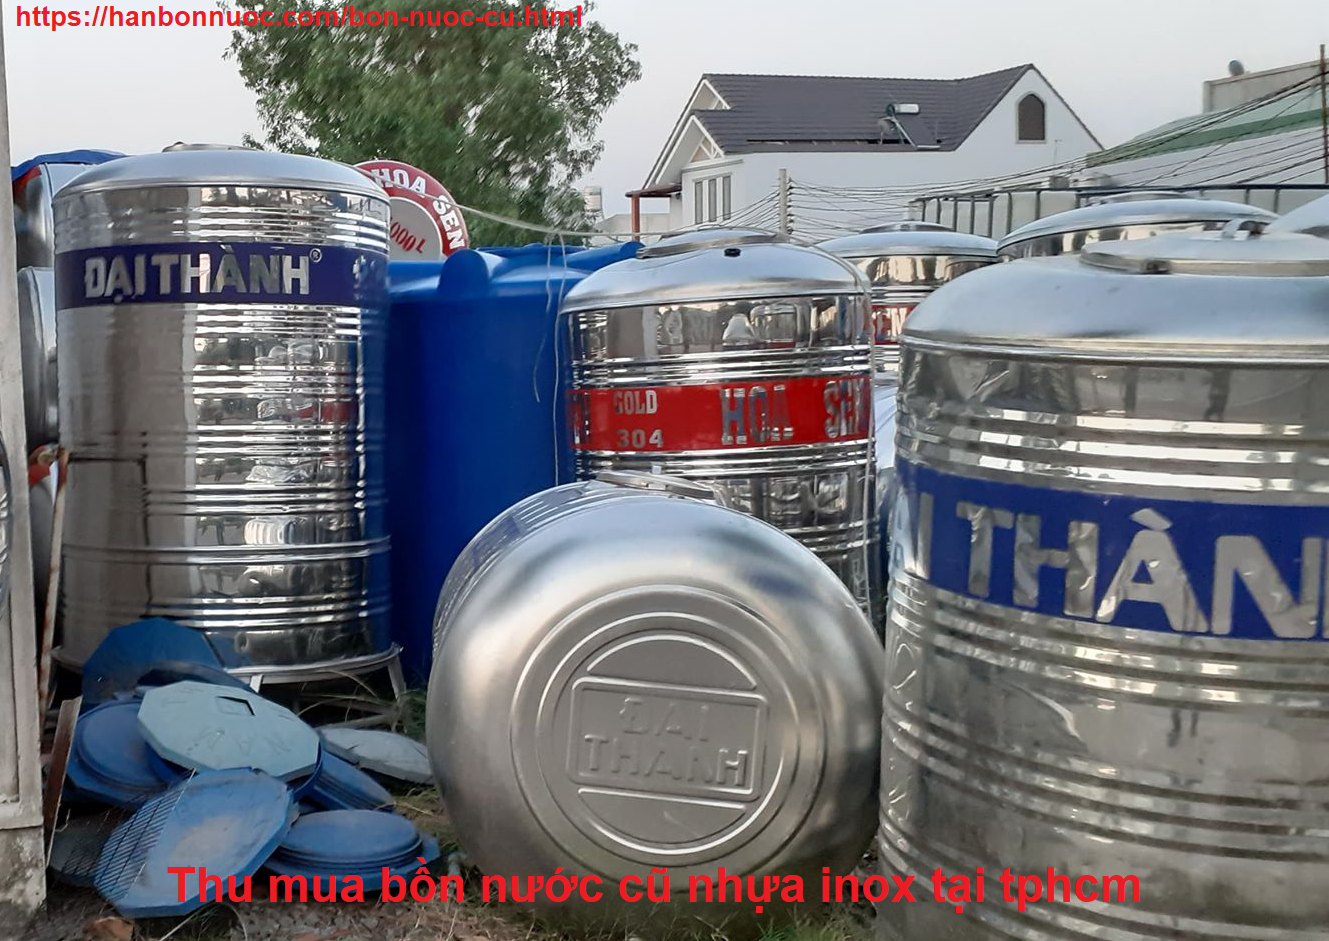 Thu mua bán bồn nước cũ nhựa inox tại tphcm